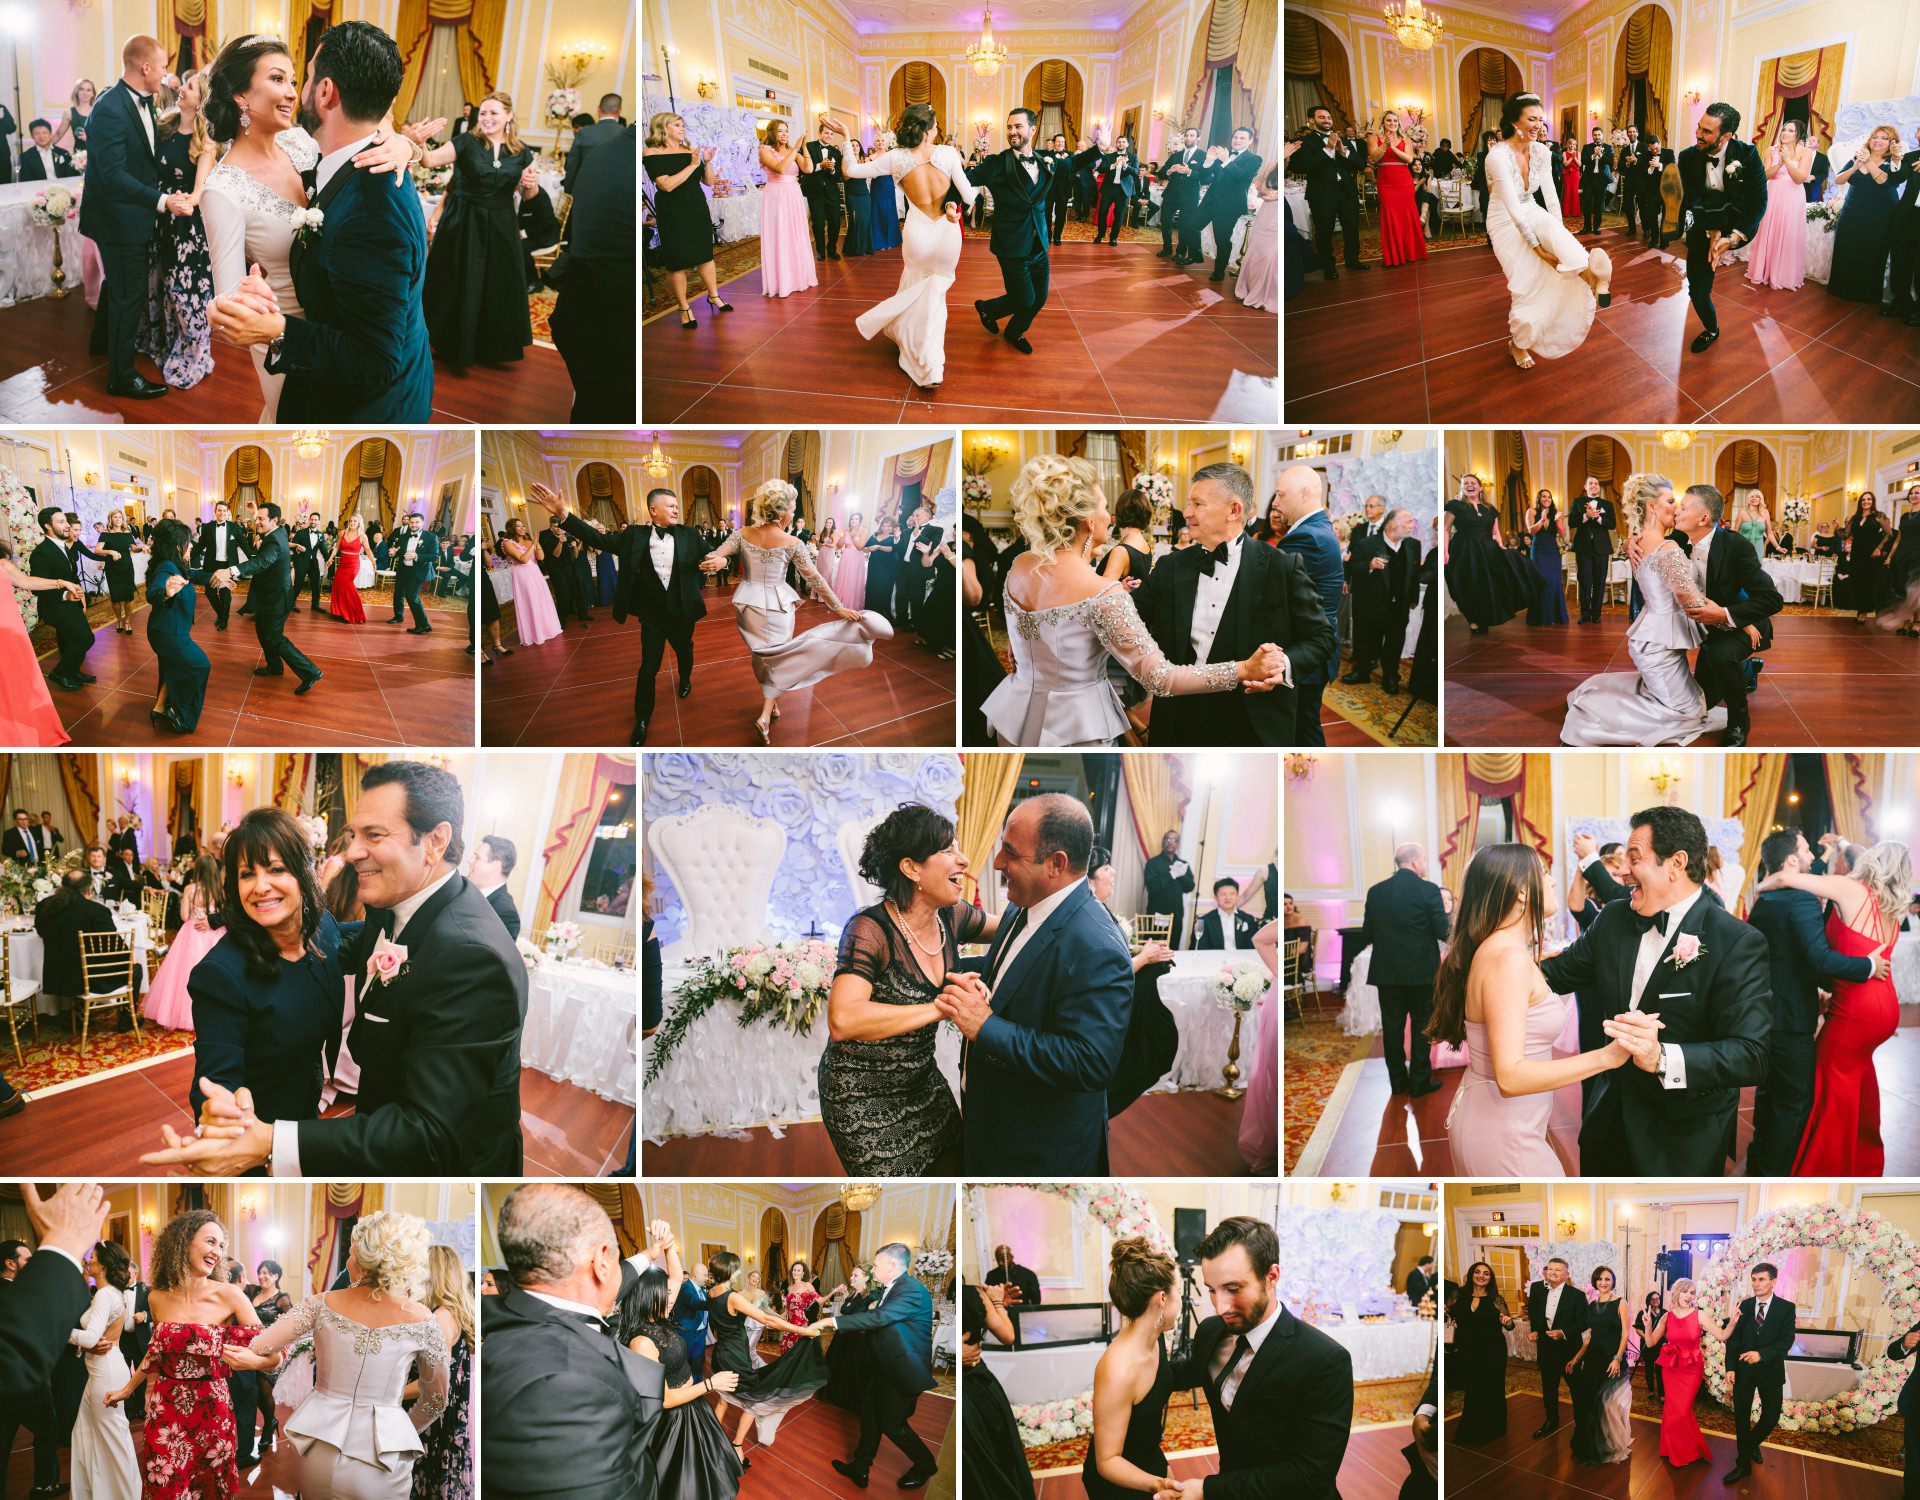 Renaissance Hotel Wedding Photos in Cleveland 4 4.jpg